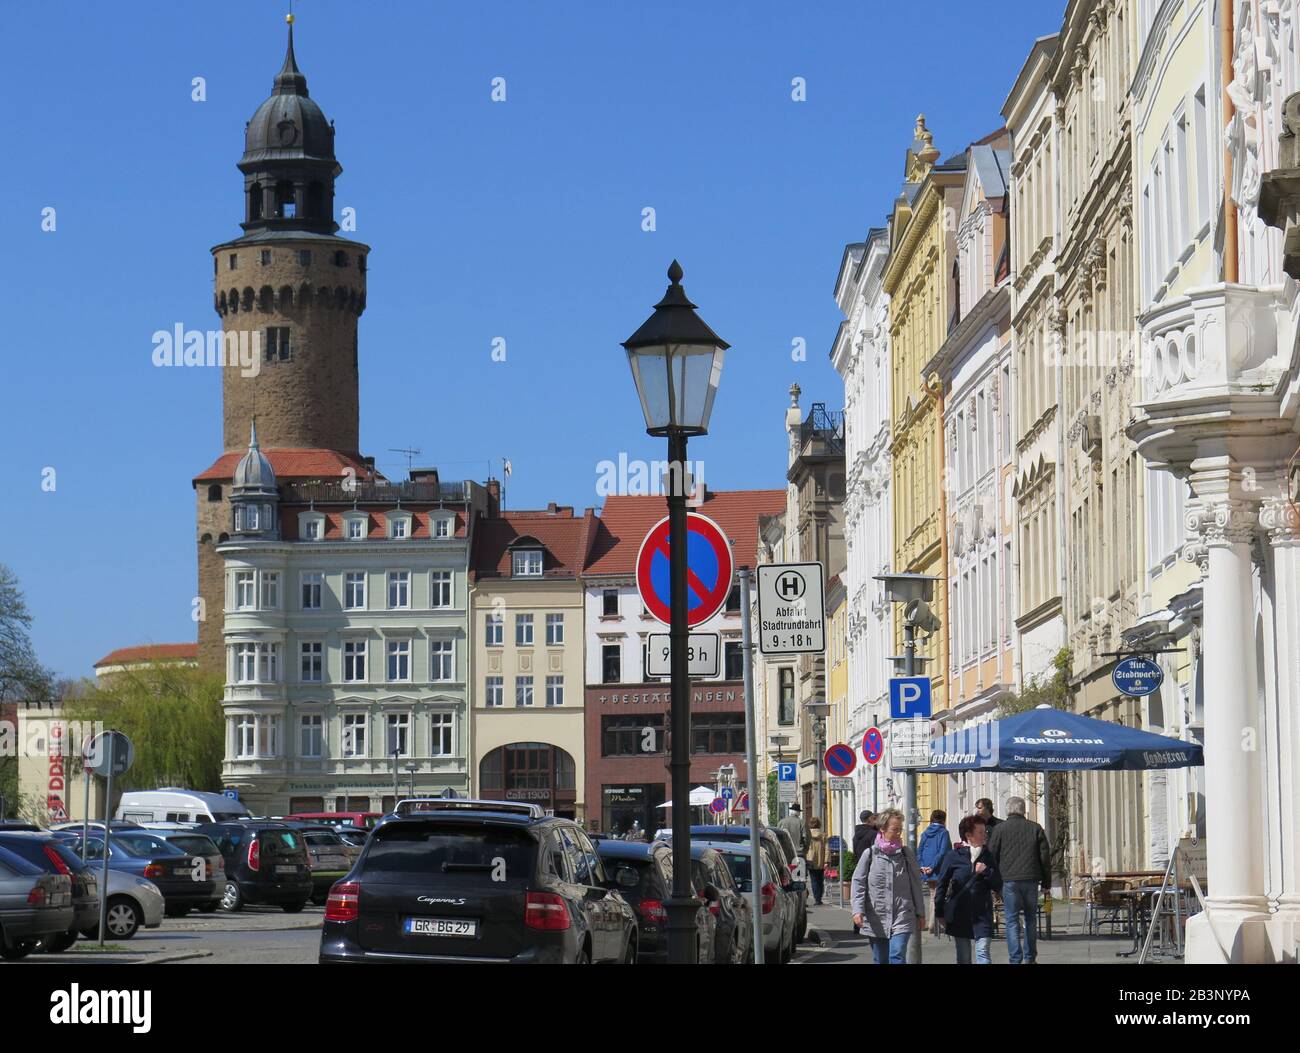 Obermarkt, Altstadt, Goerlitz, Sachsen, Deutschland Stock Photo